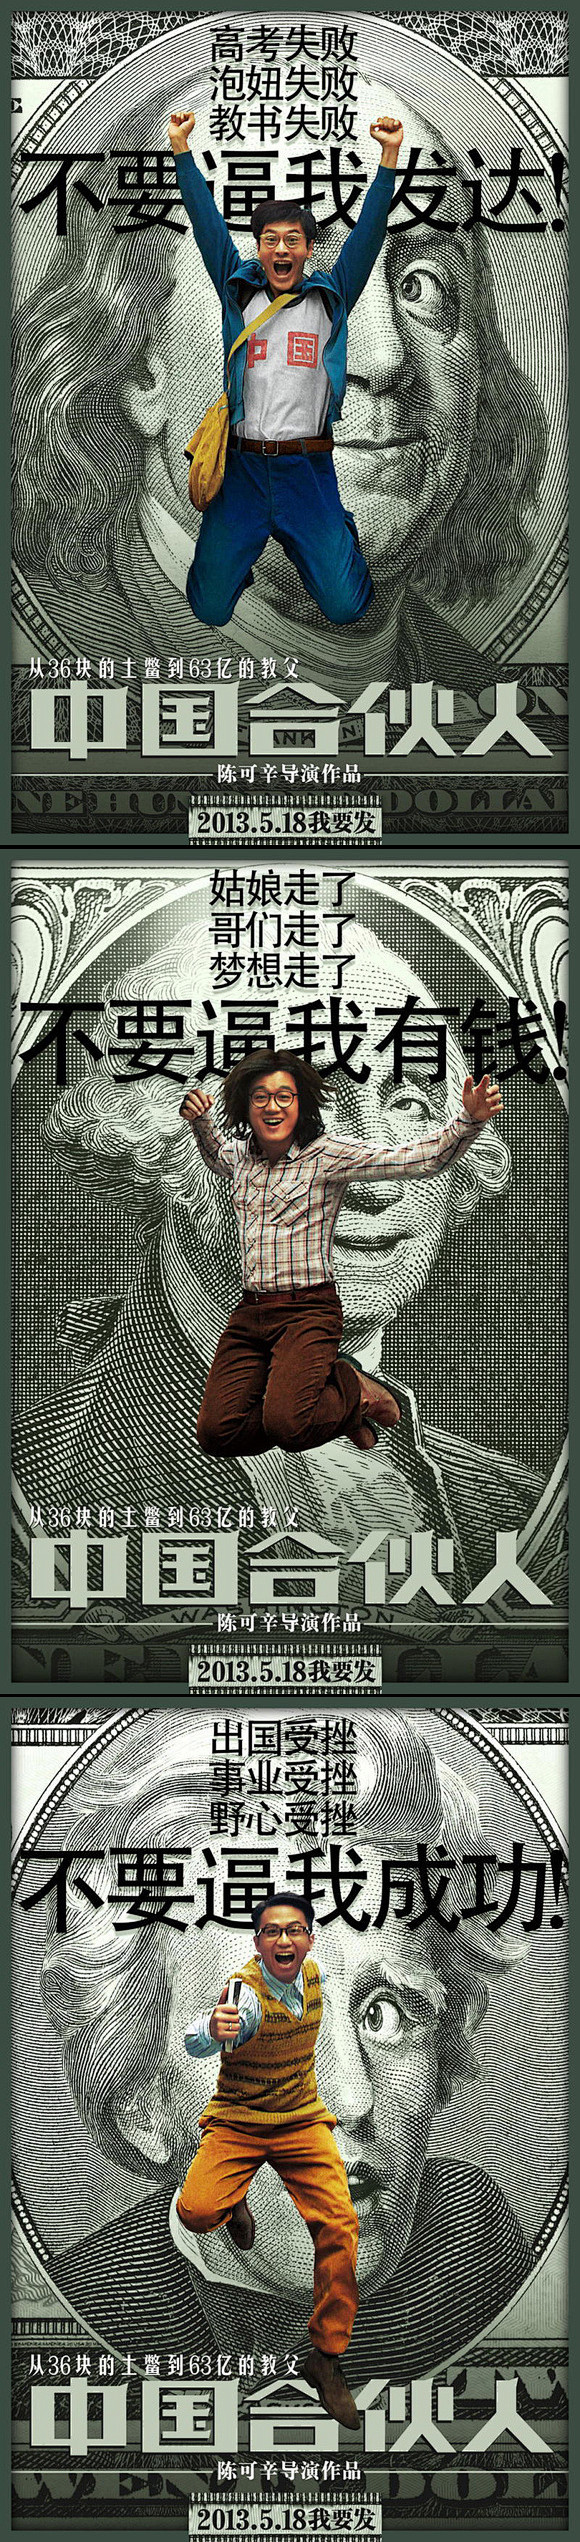 《中国合伙人》电影海报设计 #采集大赛#